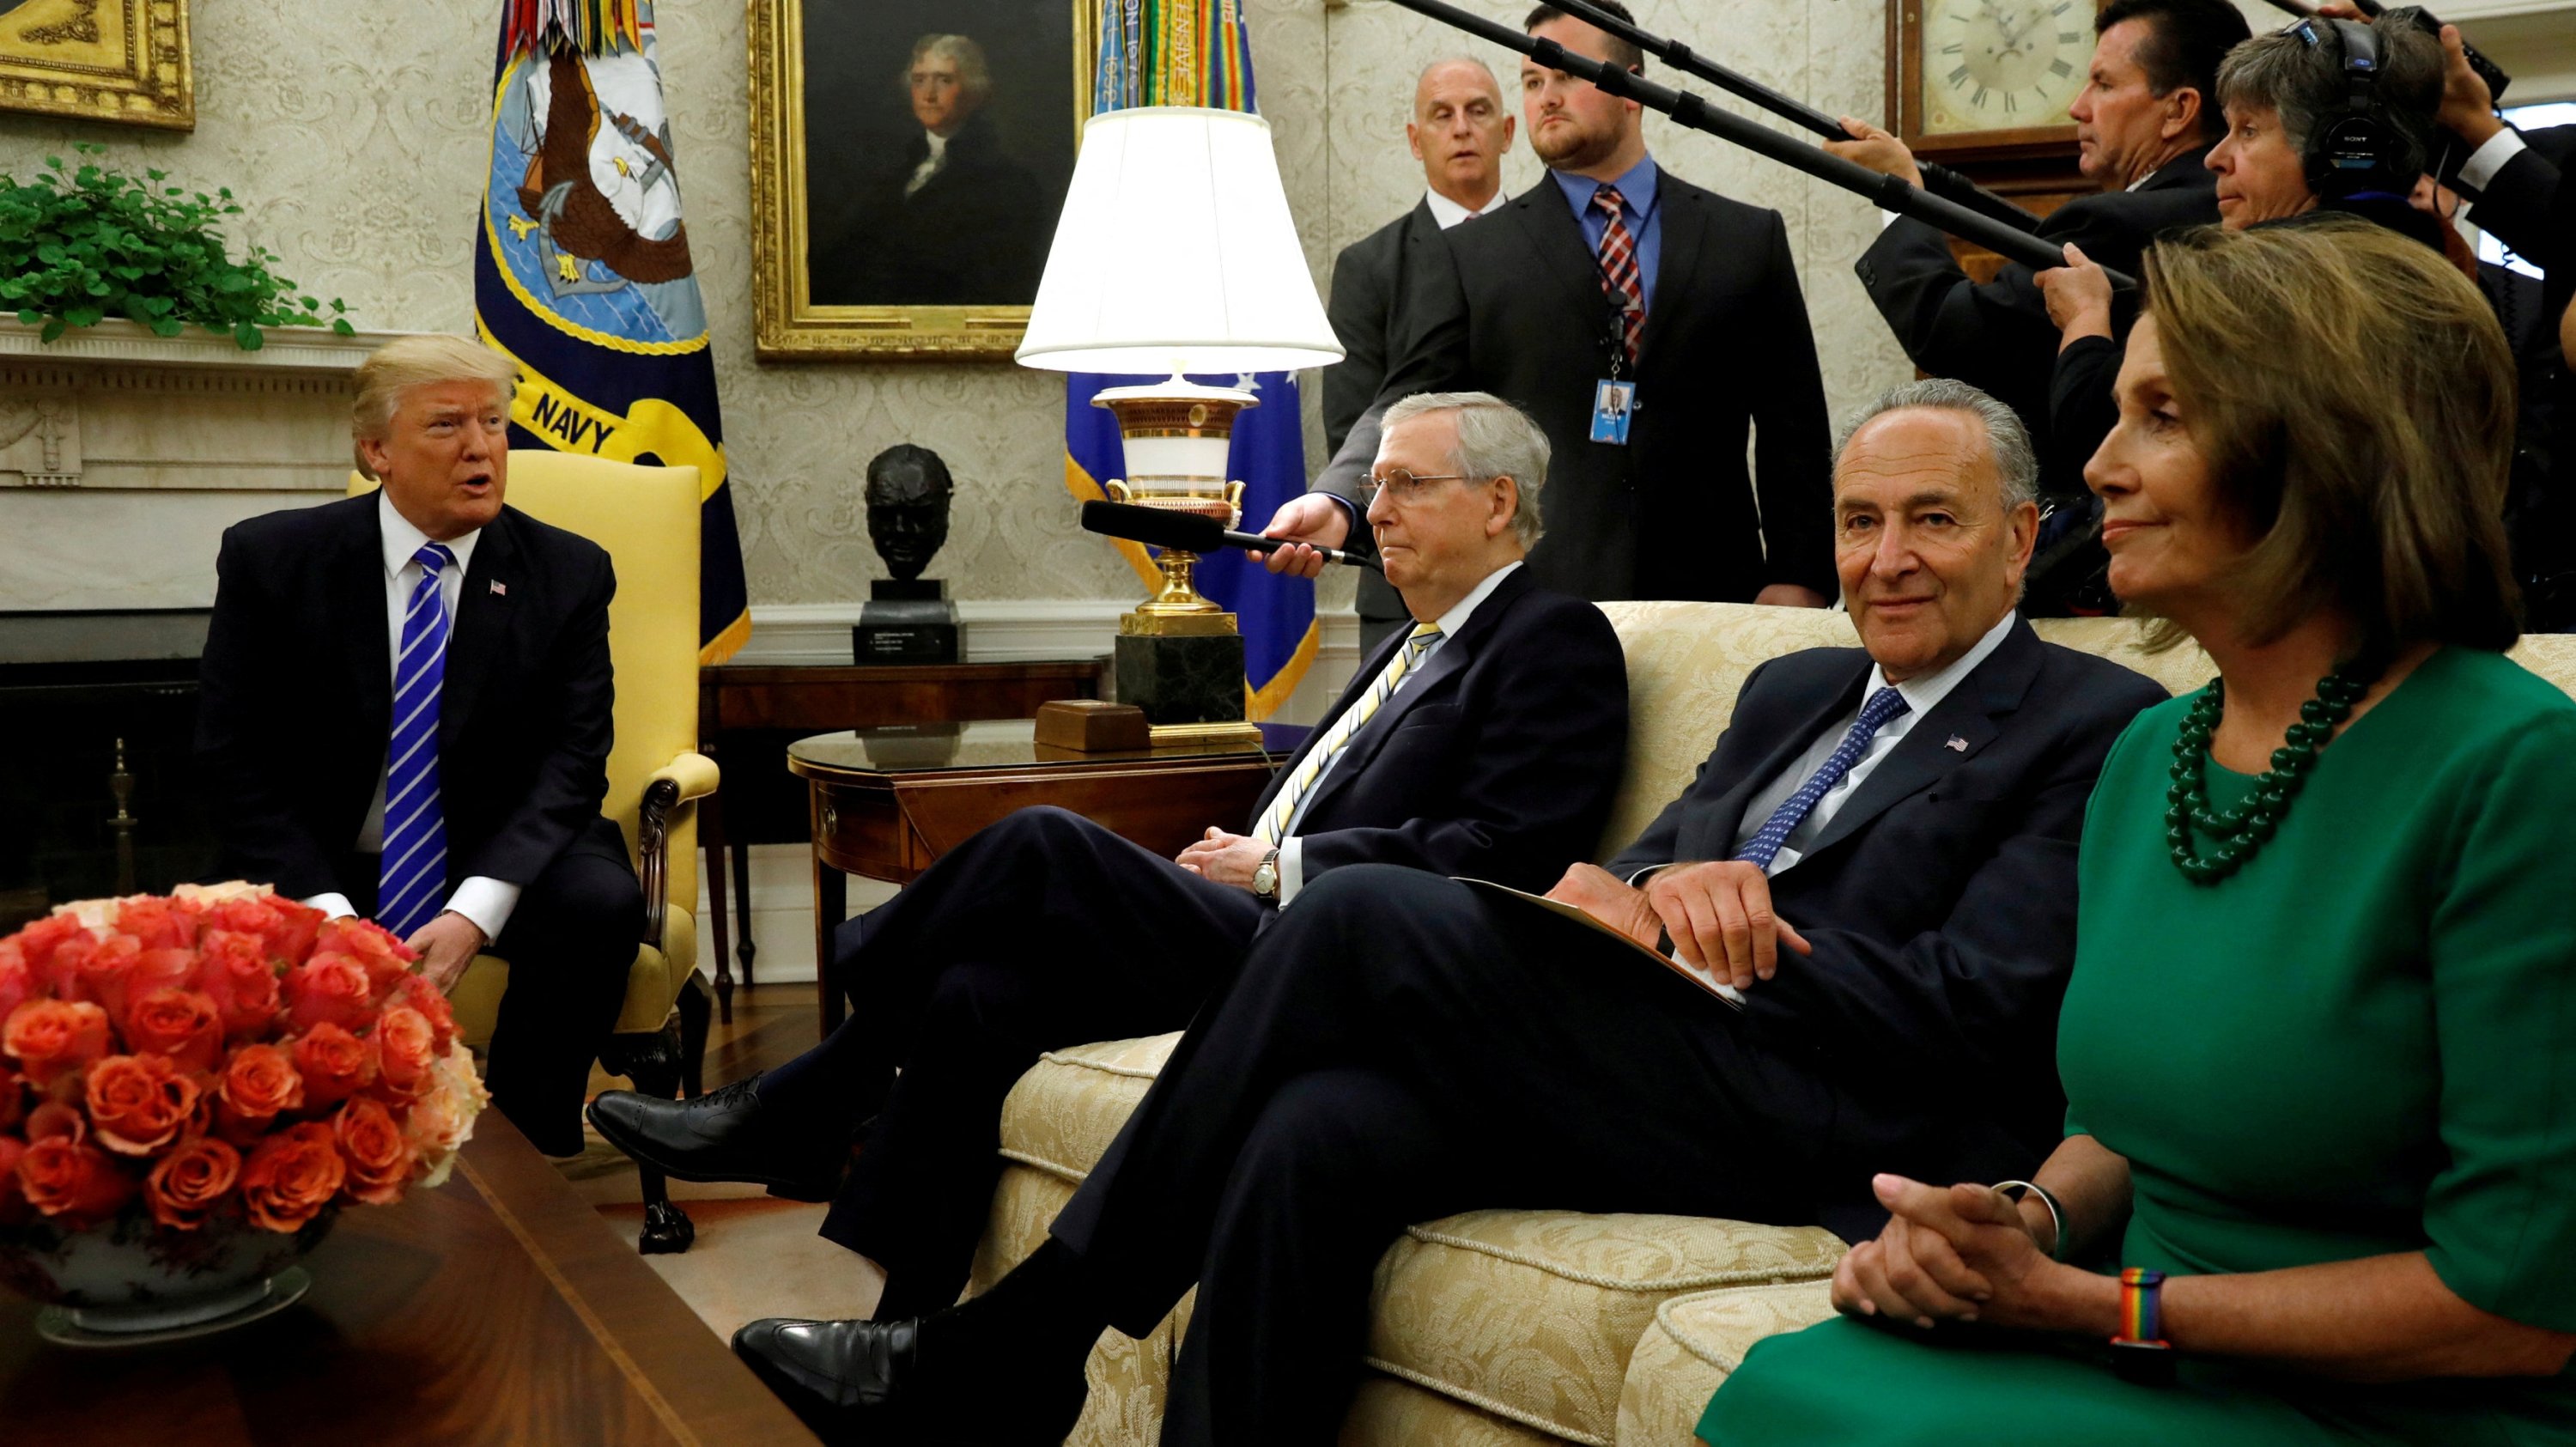 ABD Başkanı Donald Trump, Senato Çoğunluk Lideri Mitch McConnell (soldan ikinci), Senato Demokrat Lideri Chuck Schumer (sağdan ikinci), Temsilciler Meclisi Azınlık Lideri Nancy Pelosi (sağda) ve diğer kongre liderleriyle Washington, ABD'deki Beyaz Saray'ın Oval Ofisinde bir araya geldi. , 6 Eylül 2017. (Reuters Fotoğrafı)